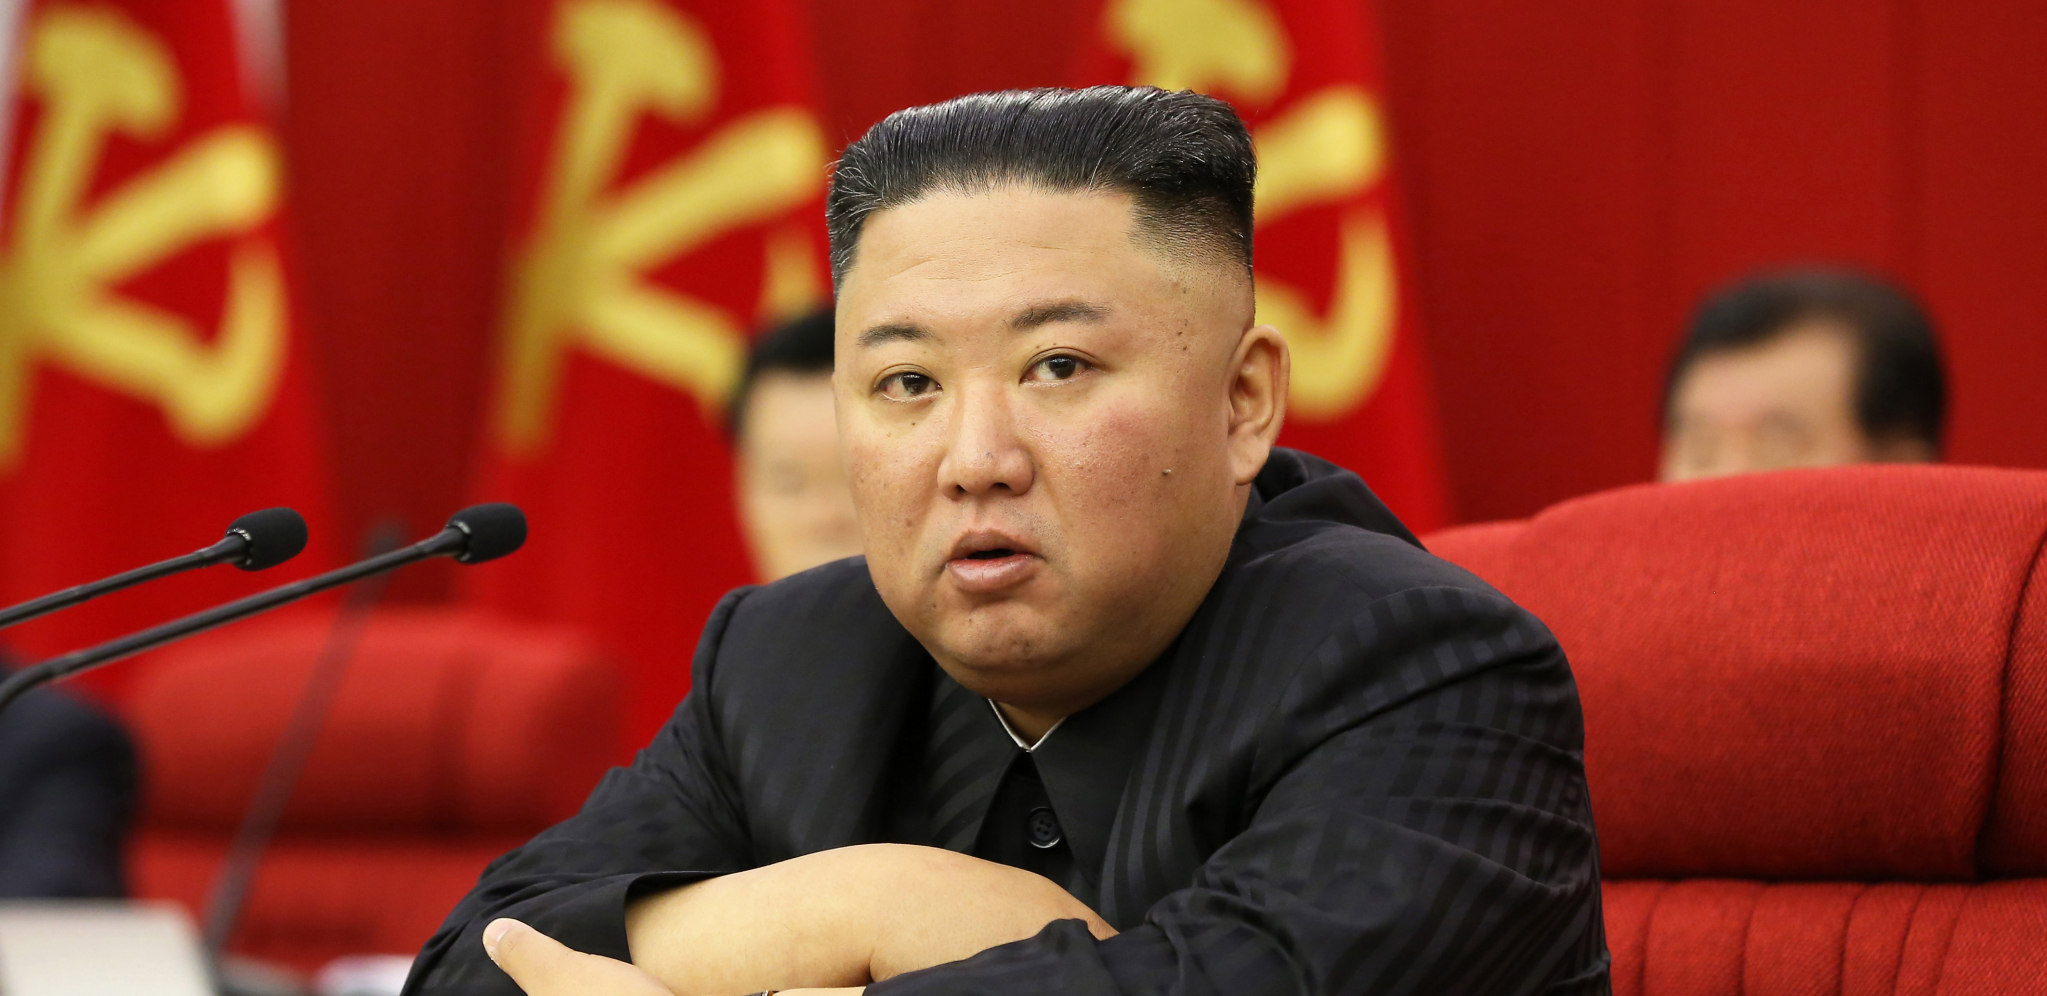 ZATIŠJE PRED BURU? Severna Koreja ne odgovara na bitan poziv!